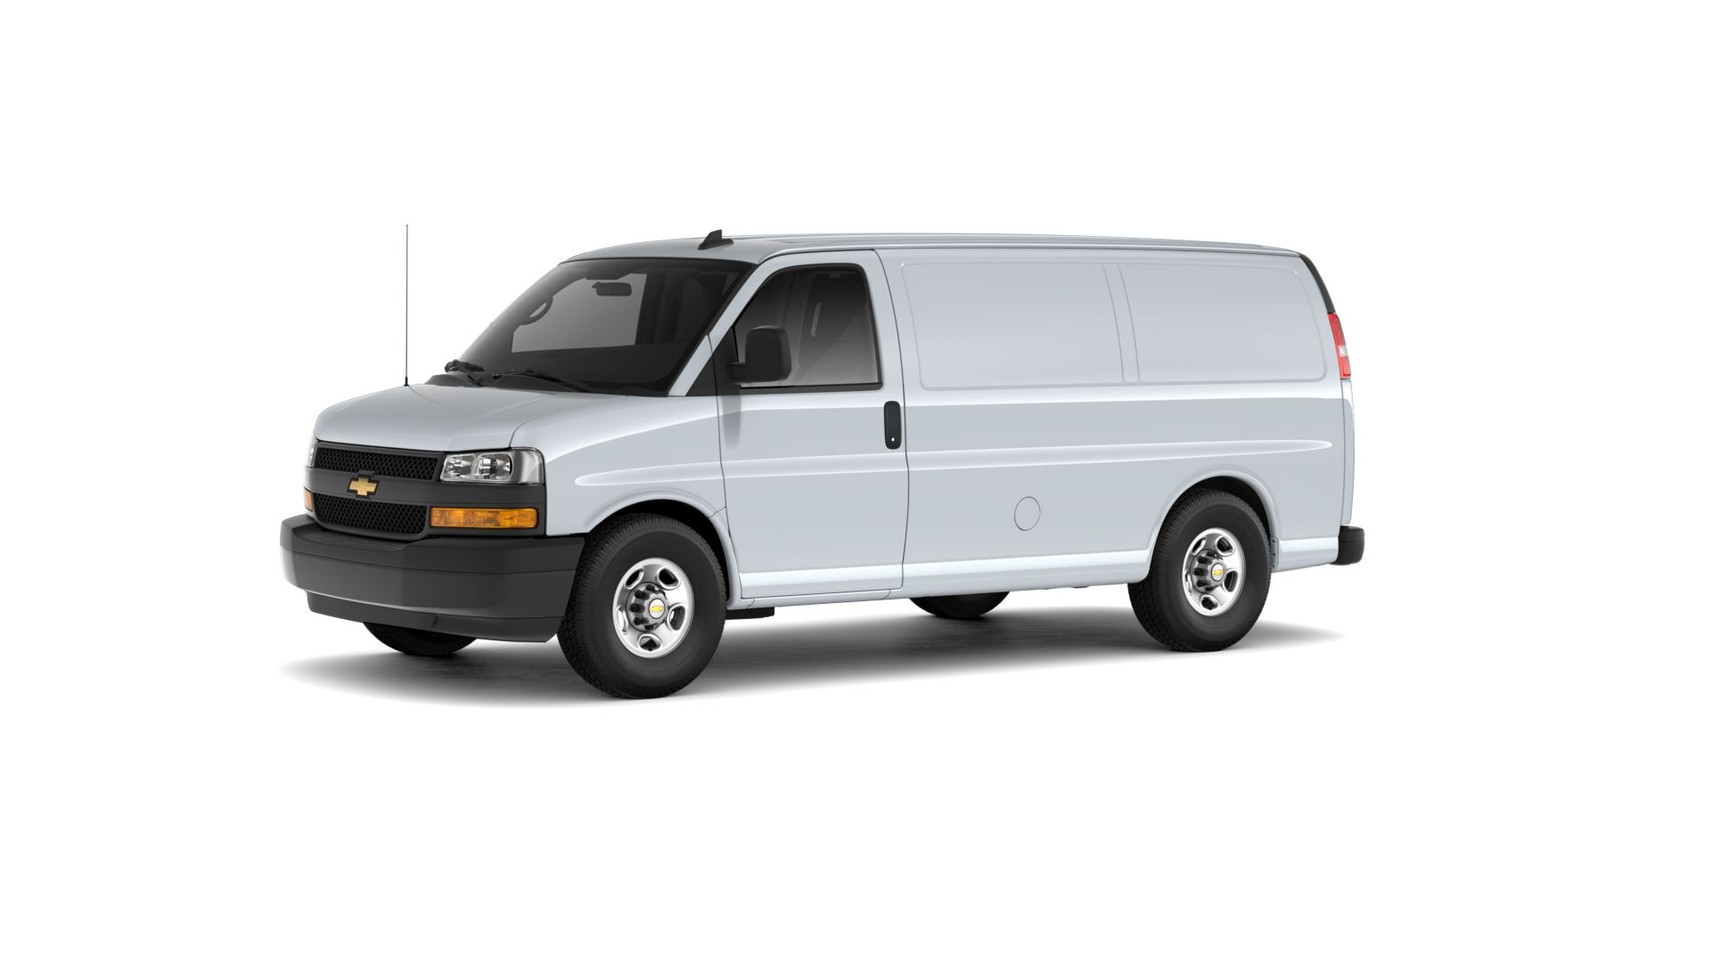 Chevrolet Express Cargo 2500 Regular Wheelbase 2020 4.3 V6 VVT Бензин 8 ст. АКПП Задний  